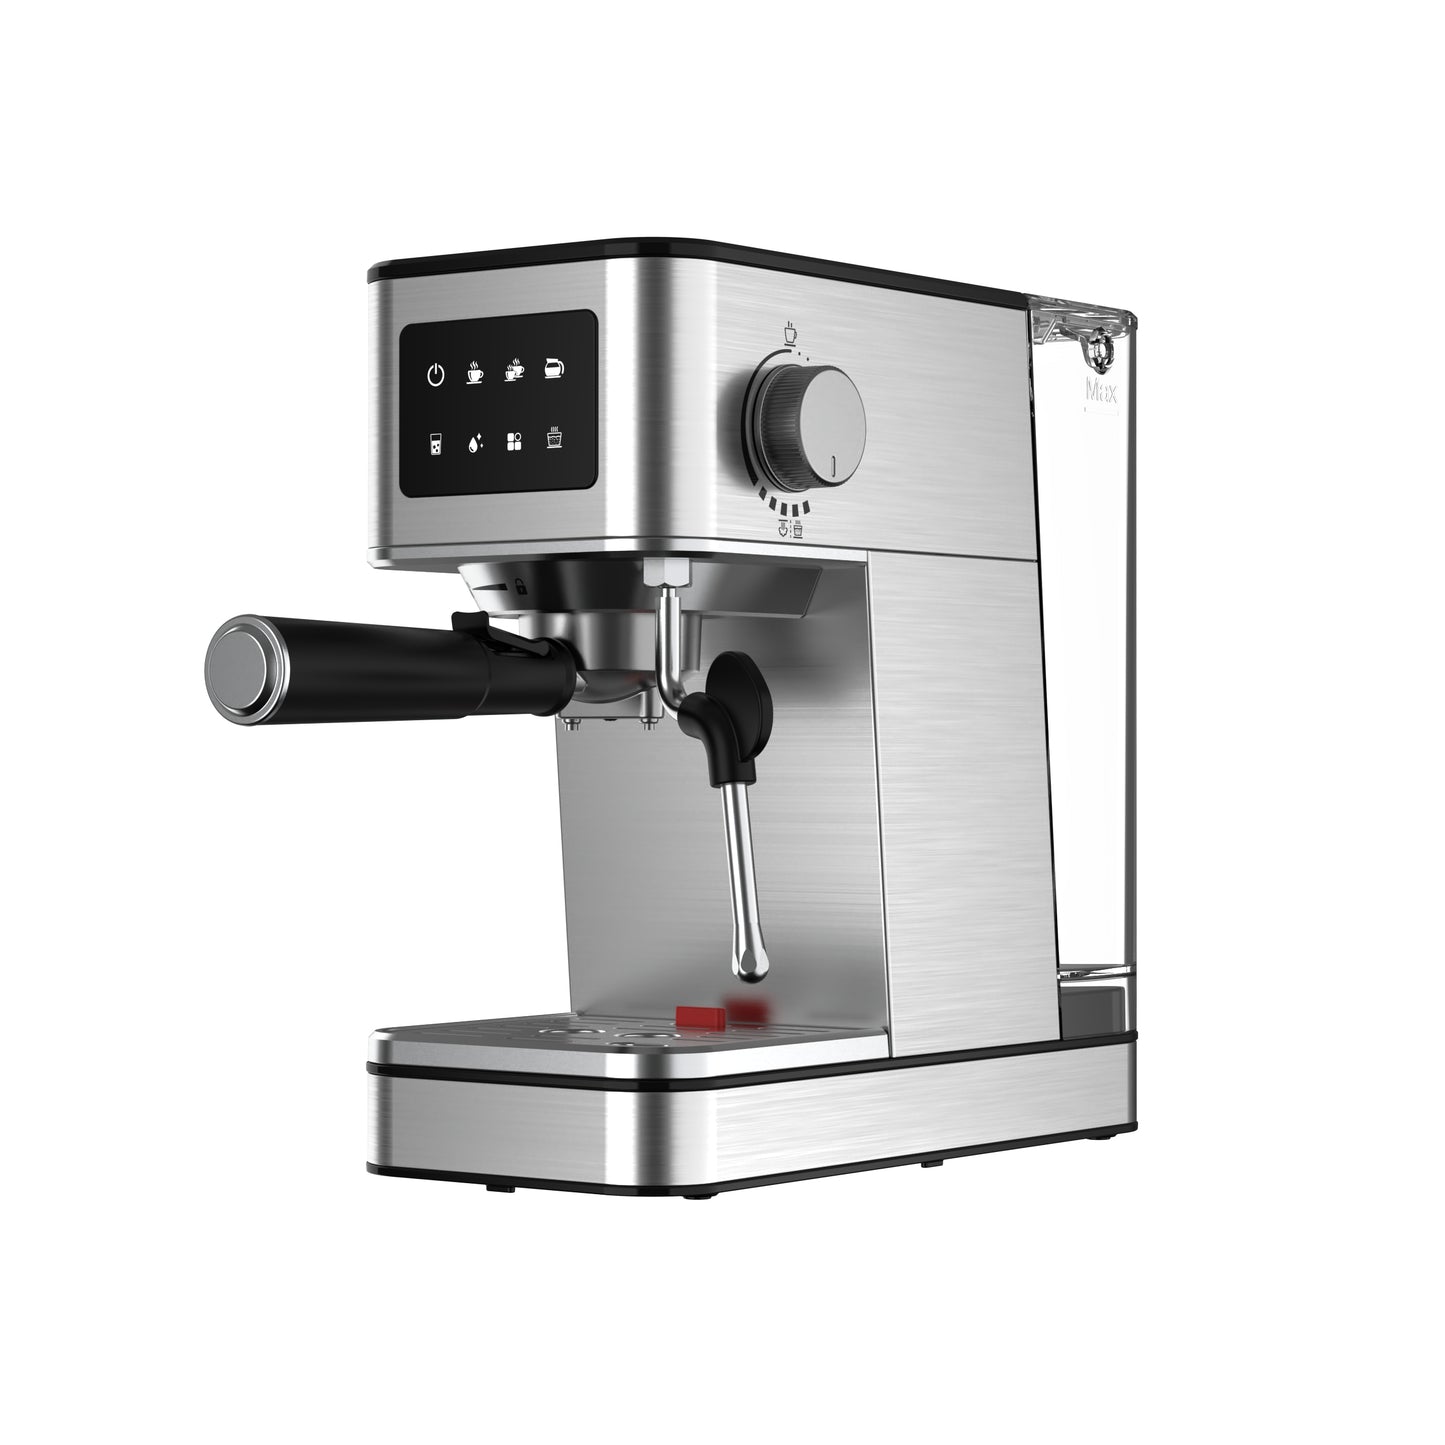 CHCOFF625 ESPRESSO Coffee Machine 15 Bar 1.7L Water Bank With 1200W